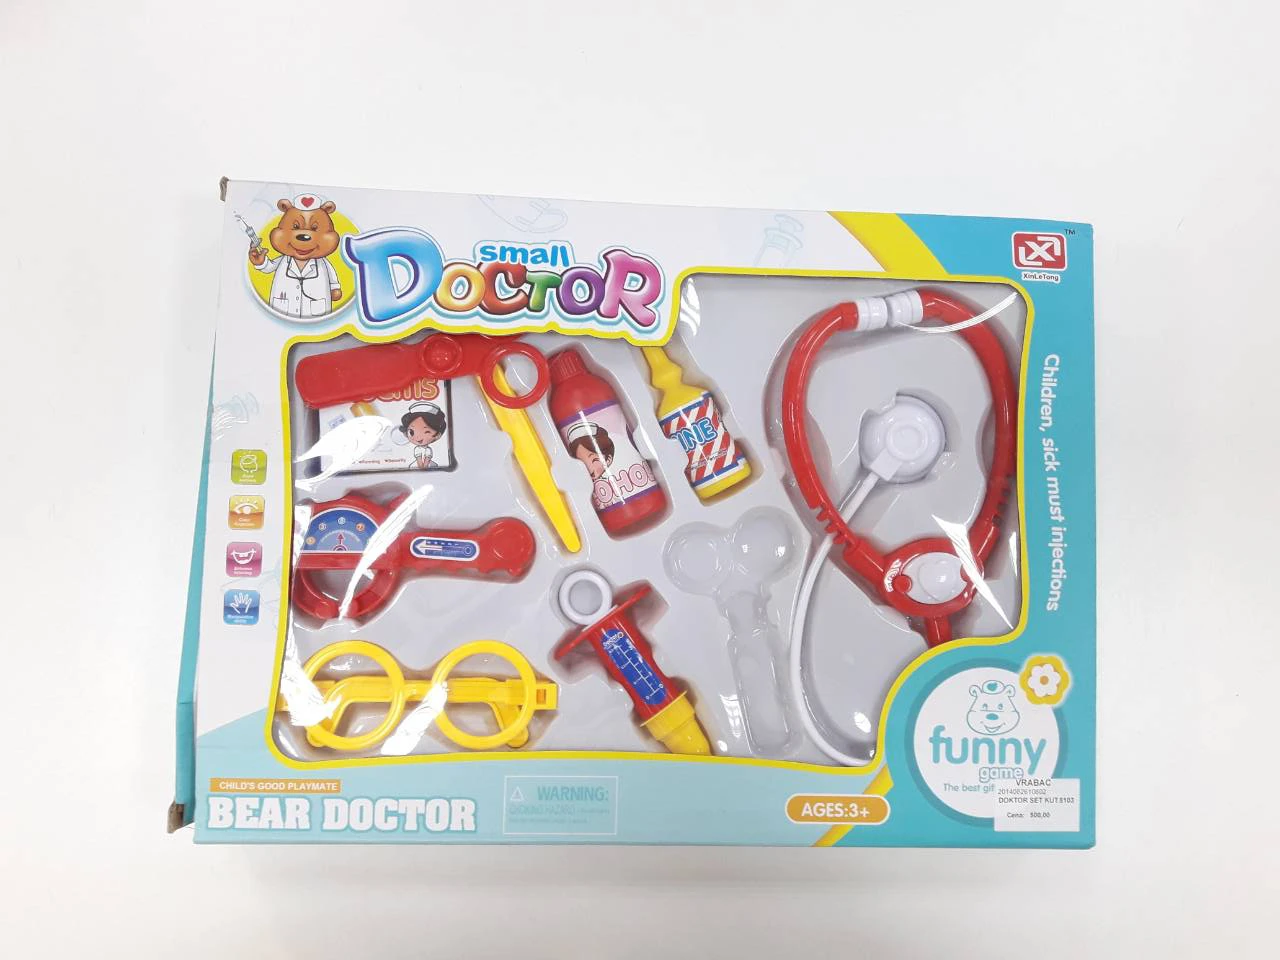 Doktor set kutija 8103 - univerzalne igračke, kreativni setovi.